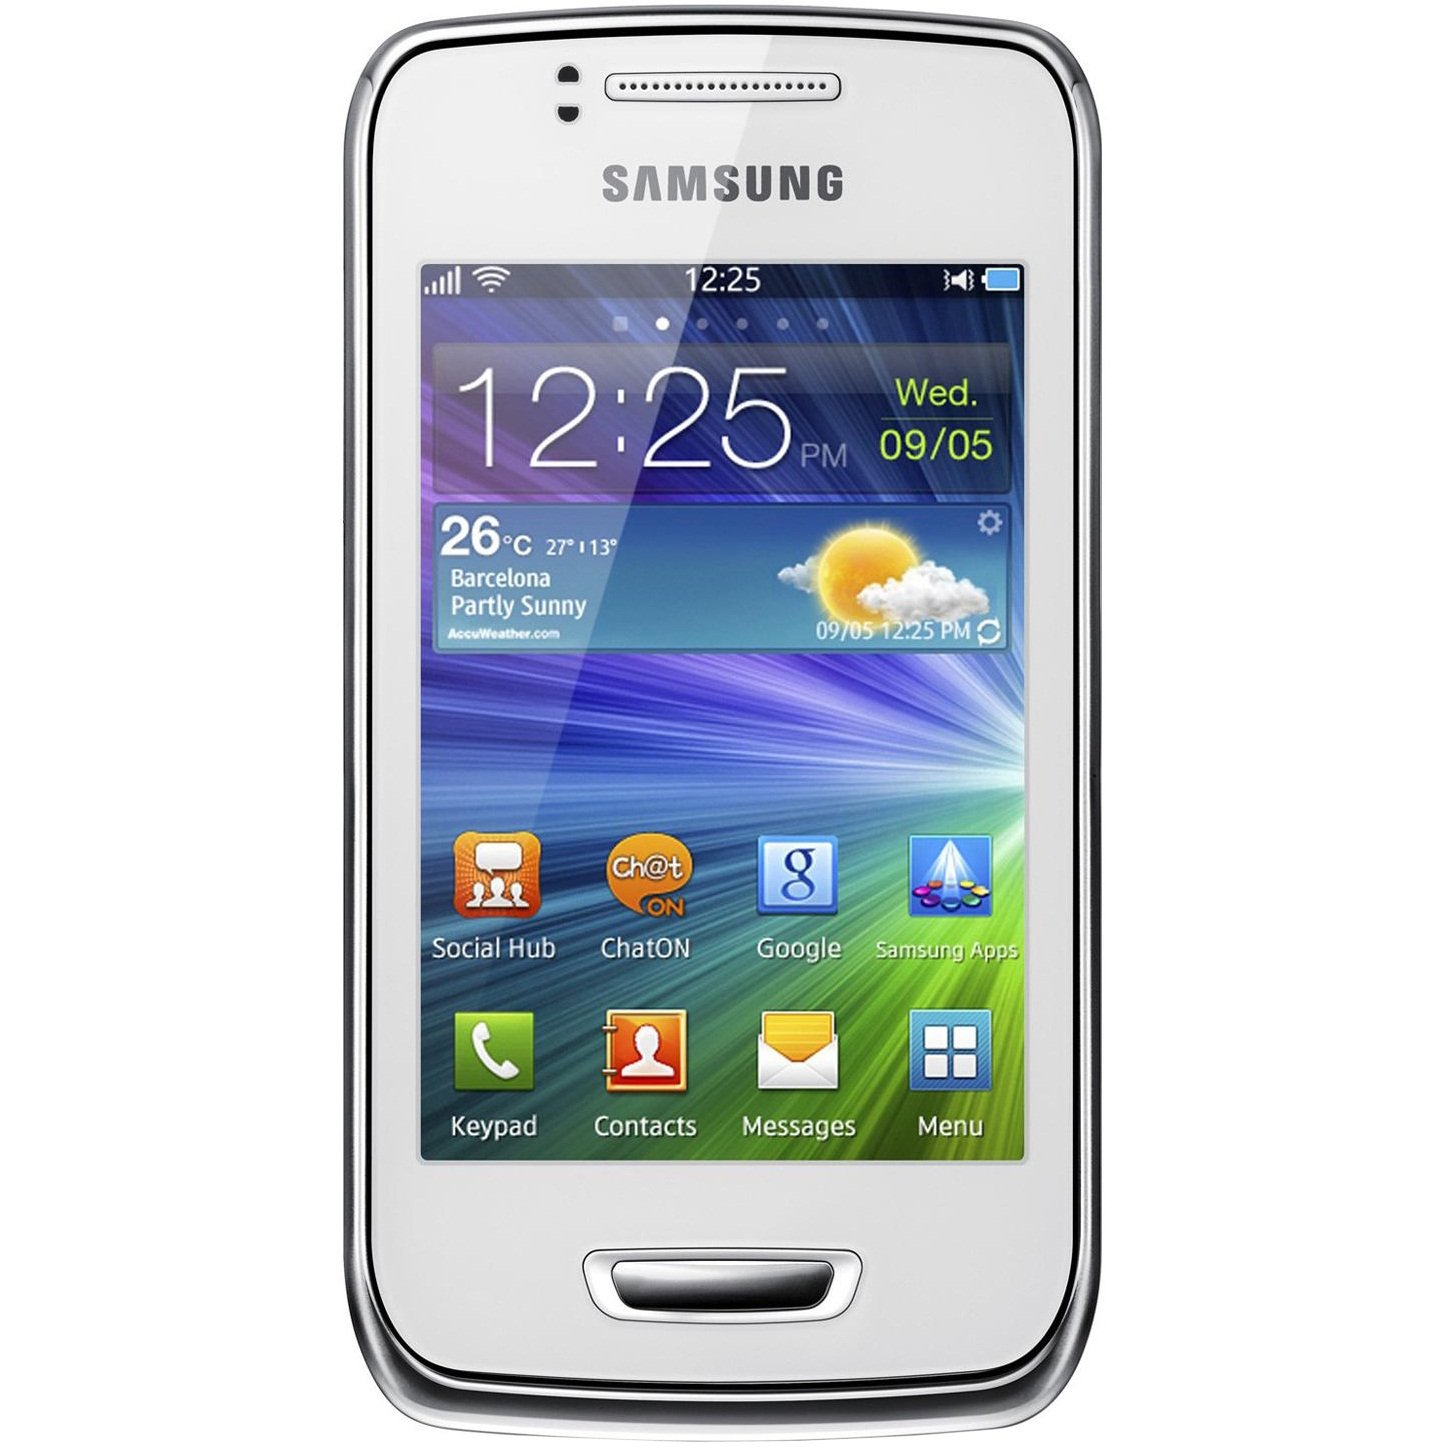 Samsung gt-s5380